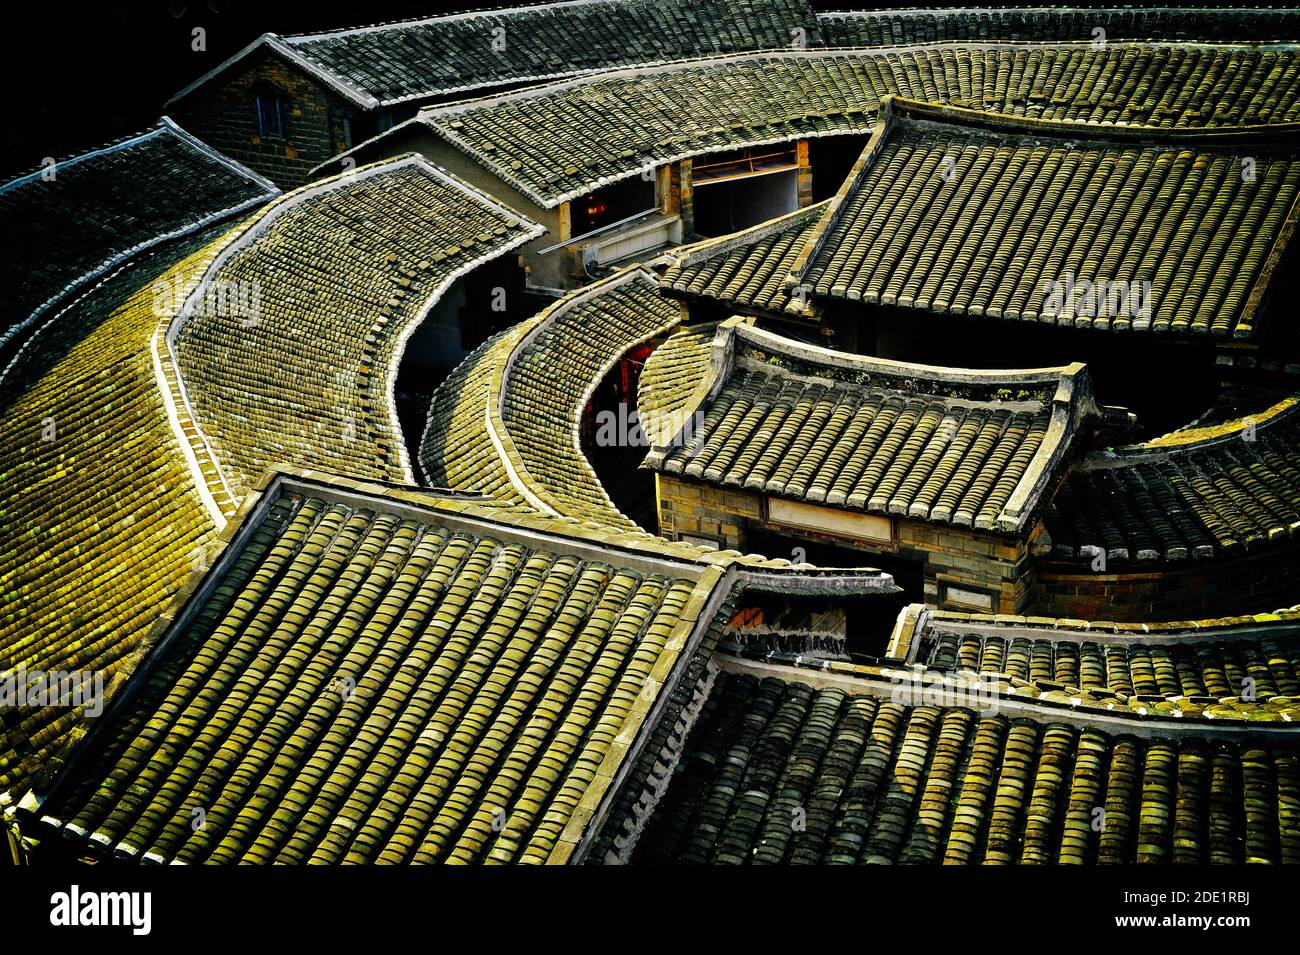 Toits de maisons traditionnelles en terre Hakka dans la province de Fujian, près de Tulou,Xibei (Chine). Classé au Patrimoine Mondial de l'Unesco Banque D'Images